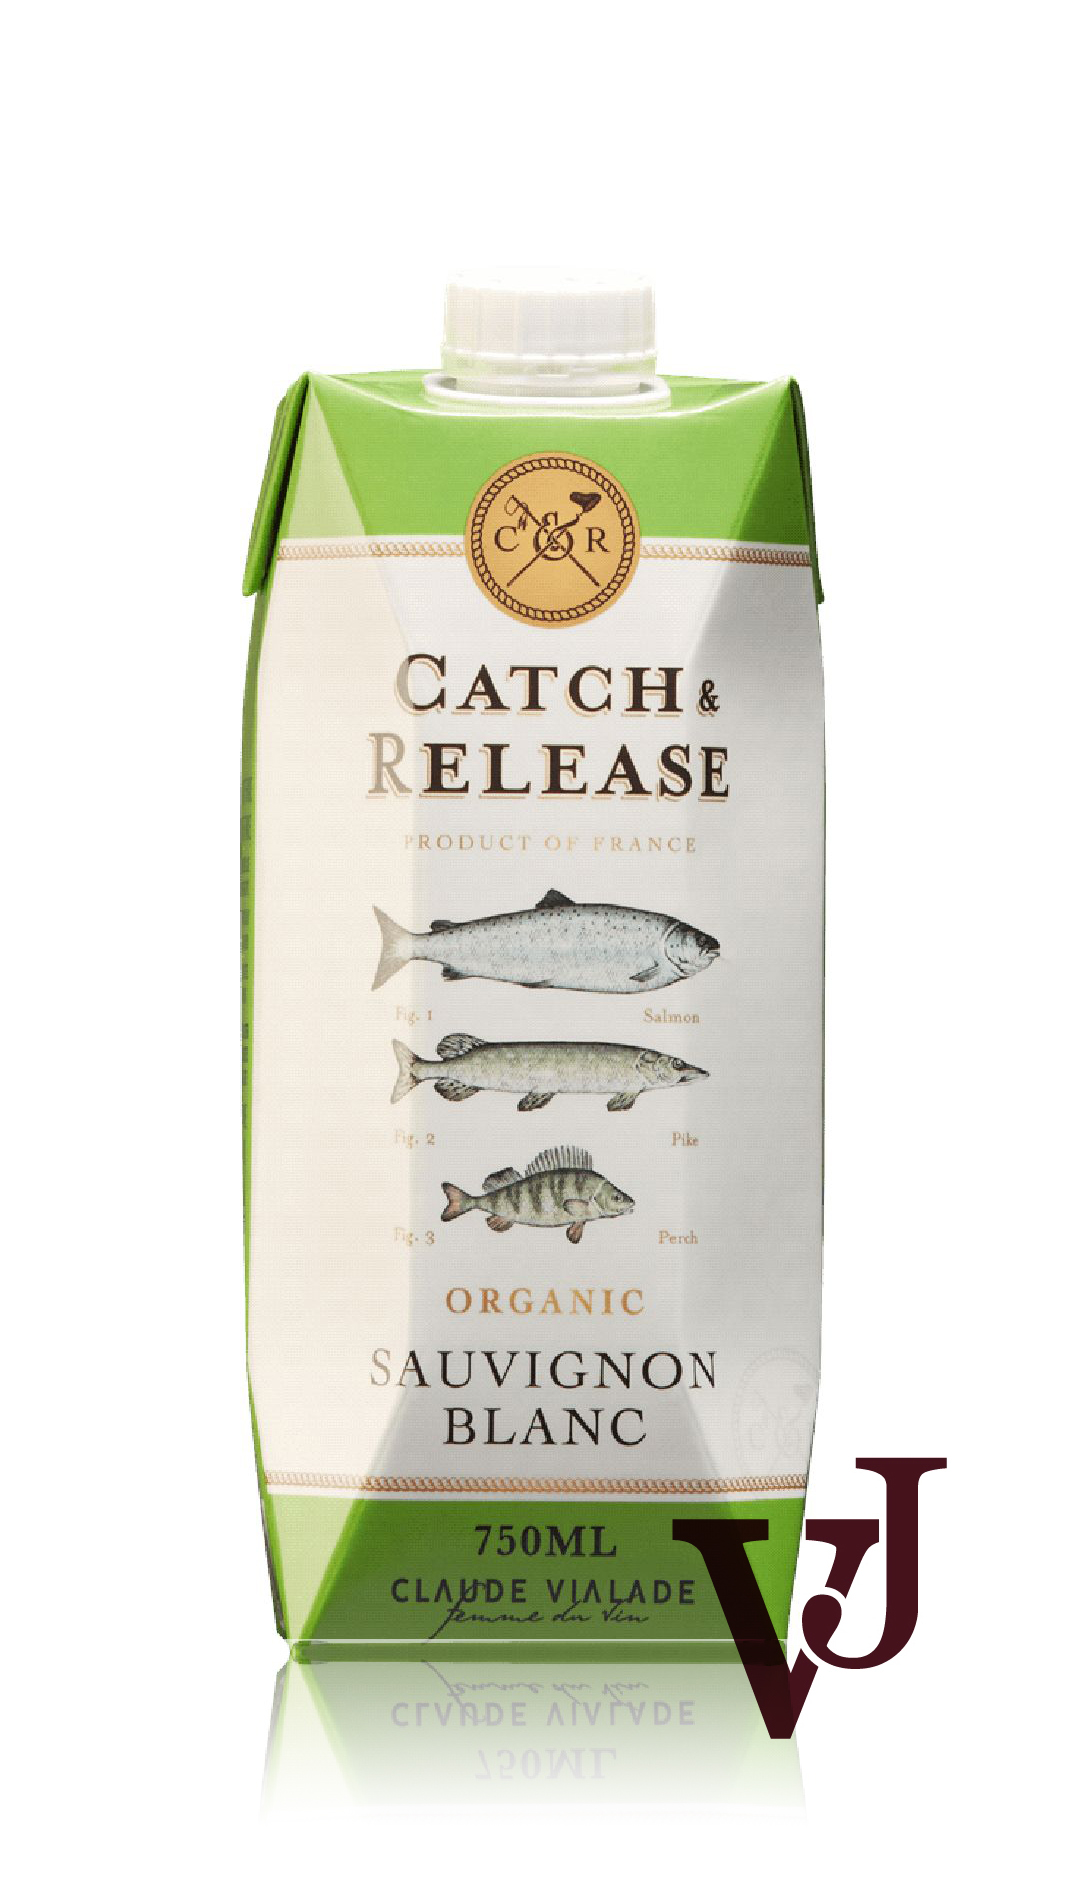 Vitt Vin - Catch & Release Sauvignon Blanc Organic artikel nummer 232901 från producenten Les Domaines Auriol från området Frankrike